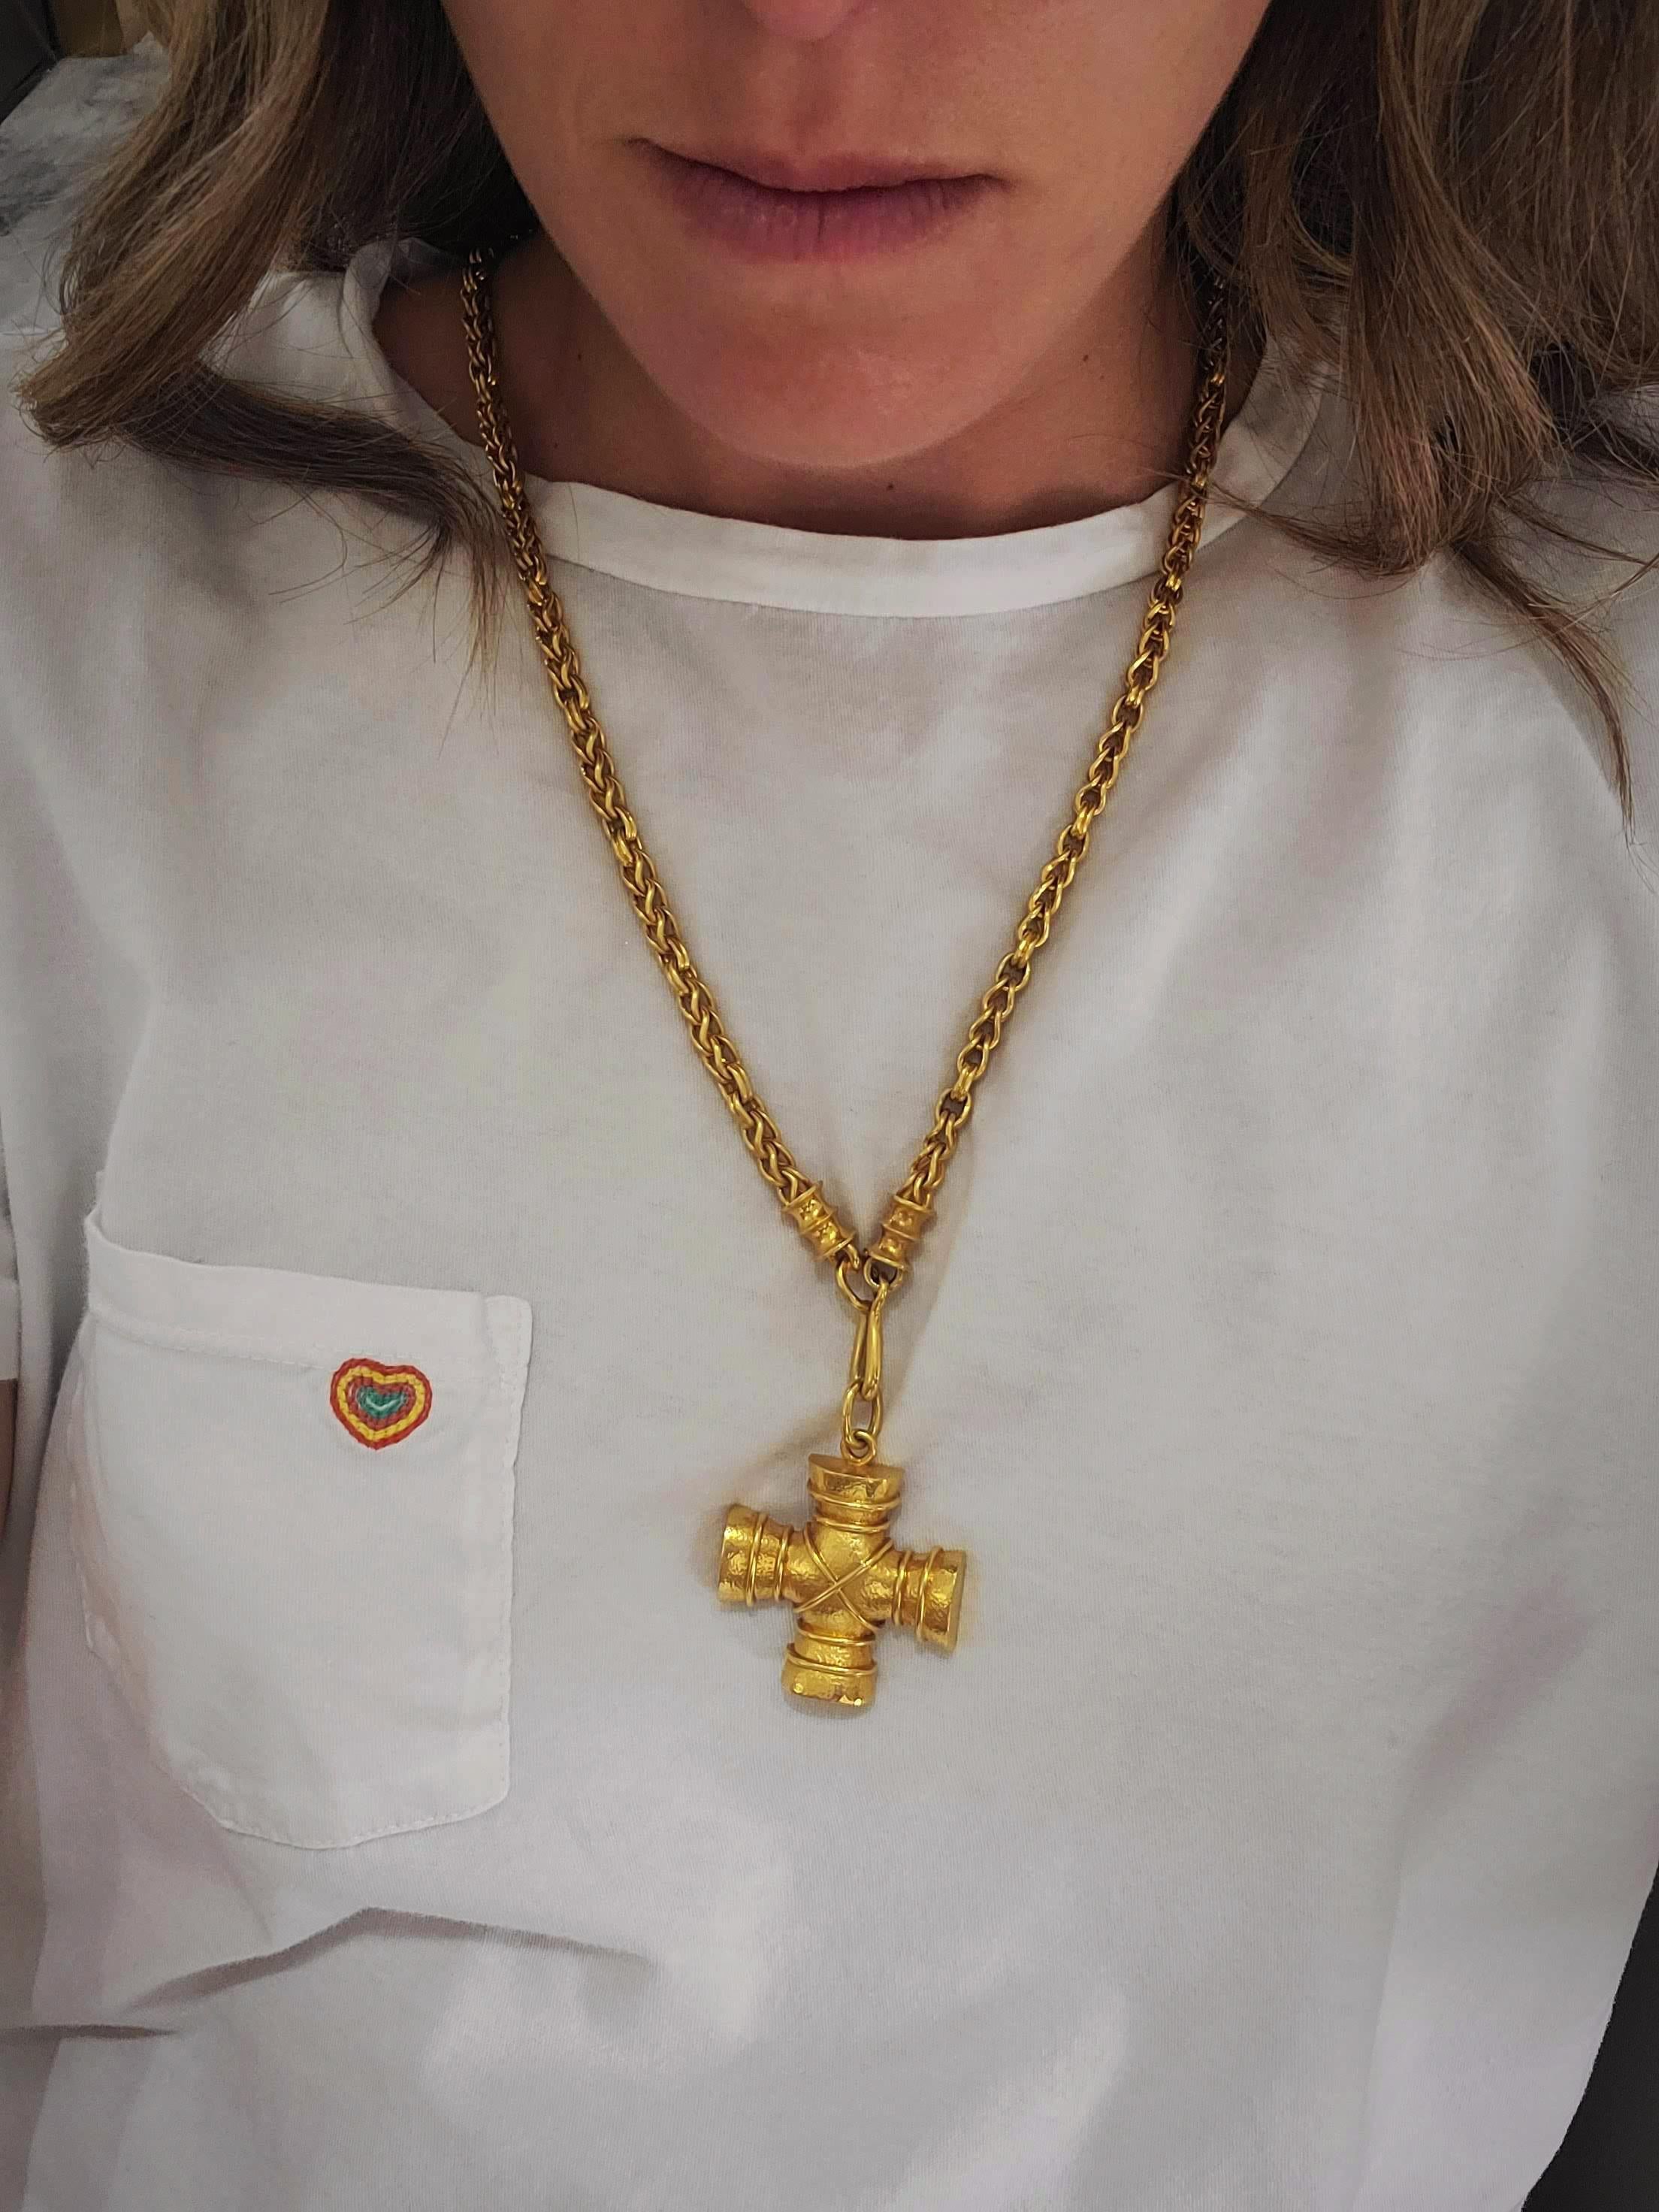 Zolotas 22 Karat und 18 Karat Gelbgold Griechisches Kreuz und Kette Anhänger Halskette für Damen oder Herren